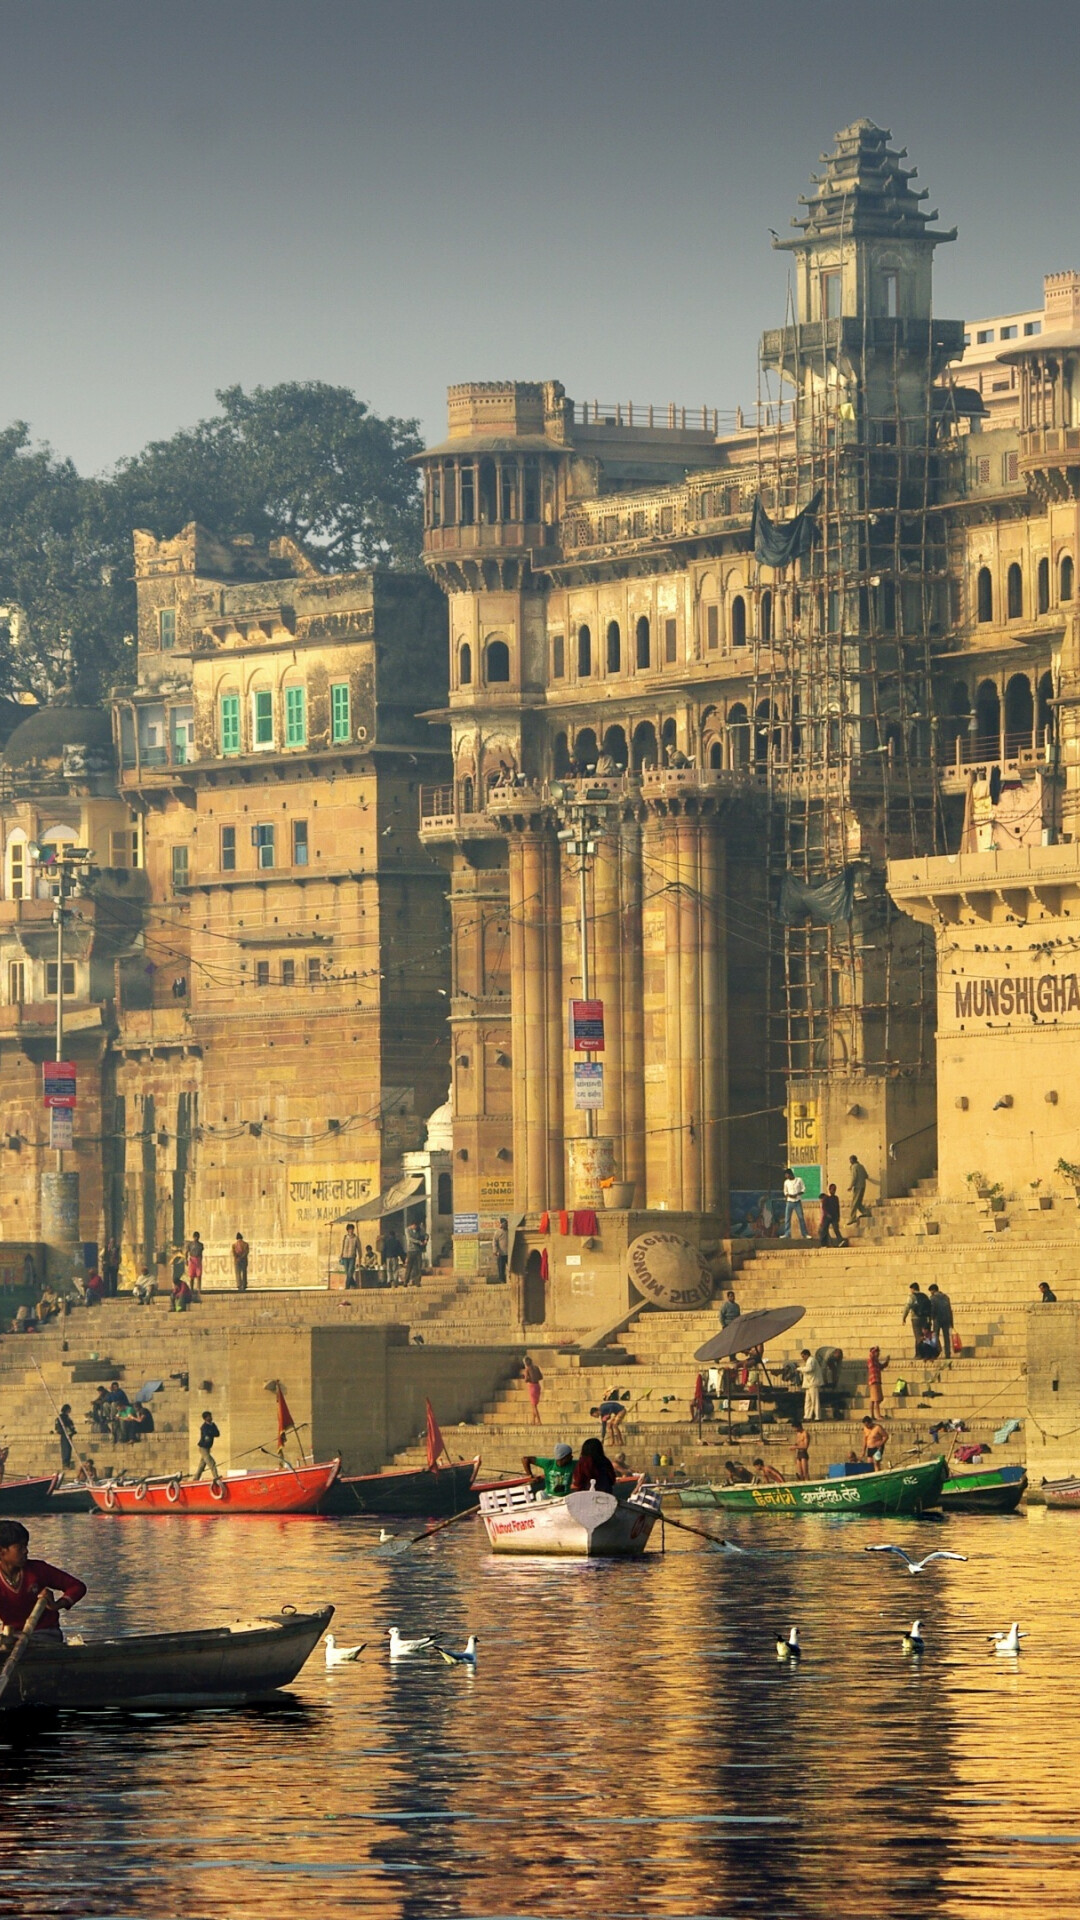 India: Munshi Ghat, Varanasi, Ganges river. 1080x1920 Full HD Wallpaper.